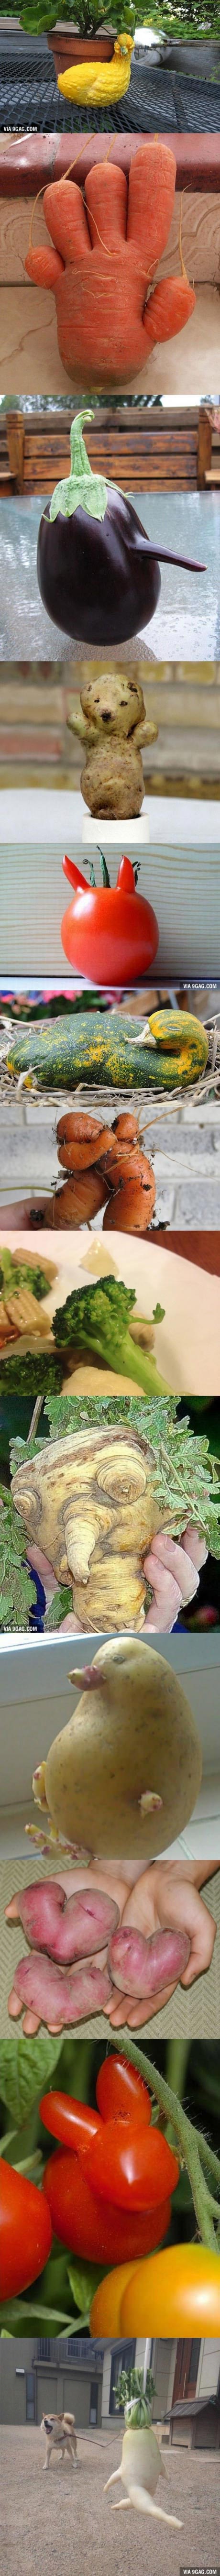 عکس: اشکال مخفی بامزه در سبزیجات!